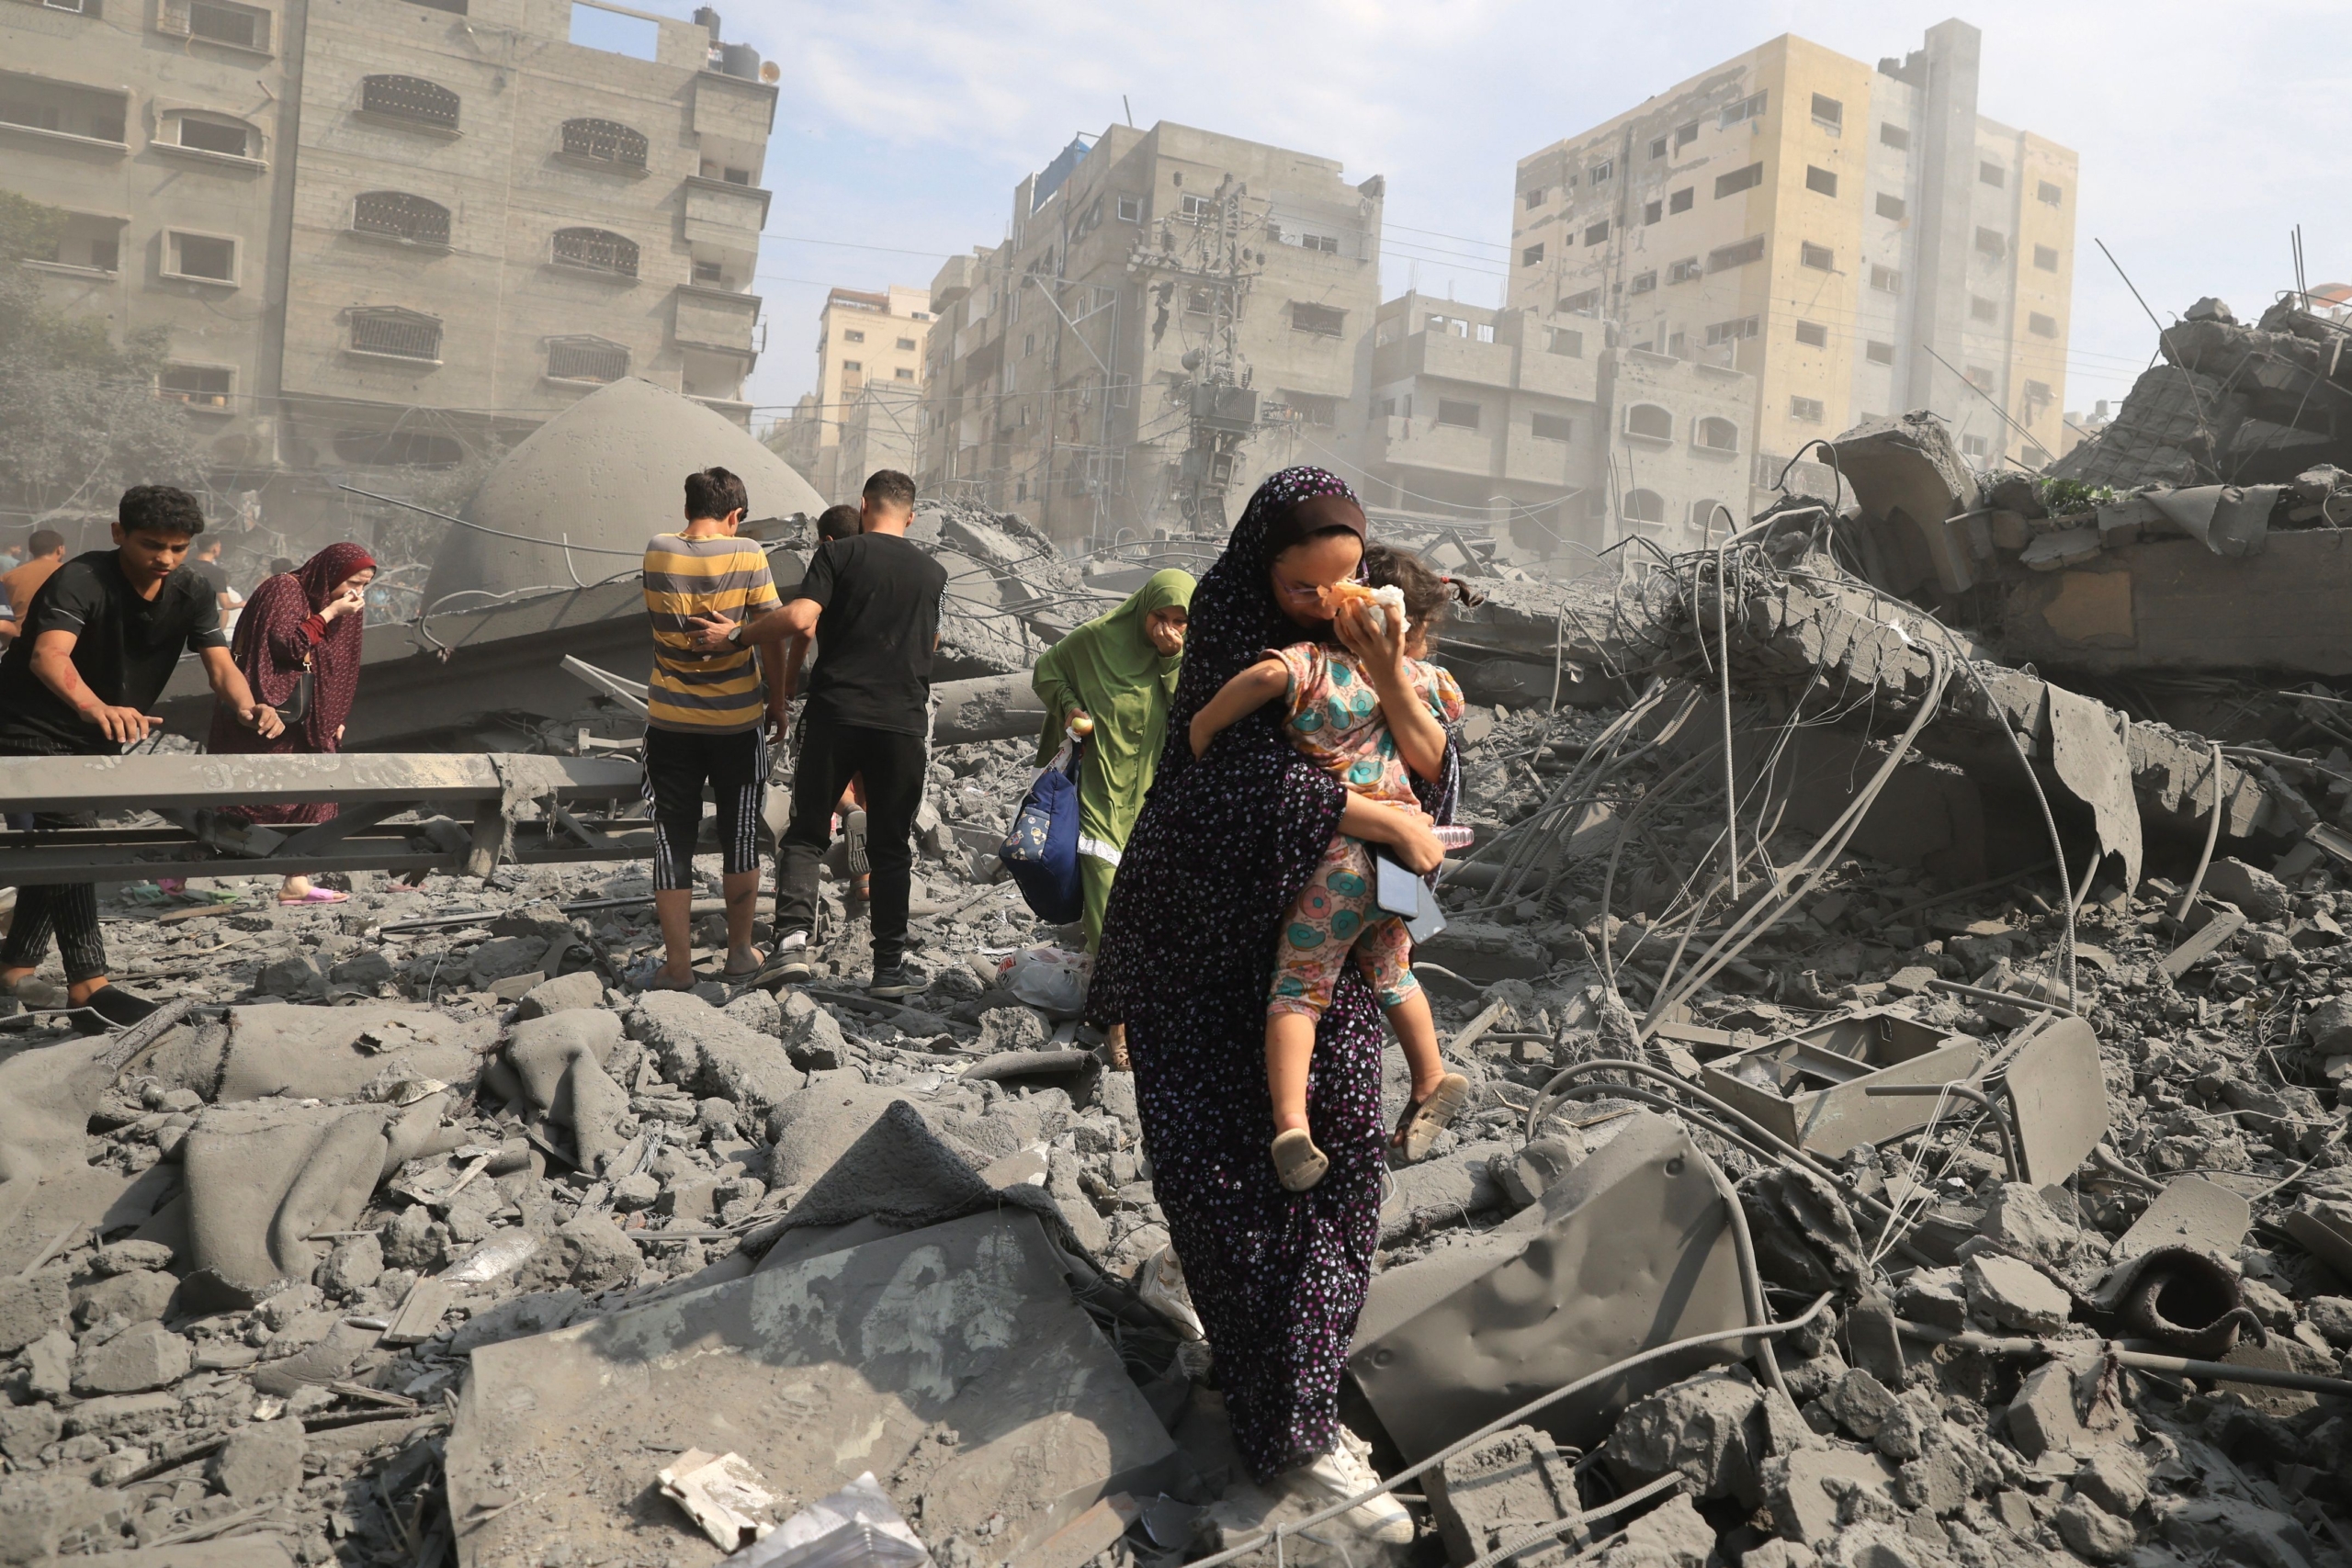 Amnesty International appelle à mettre fin à la « catastrophe humanitaire » dans la bande de Gaza